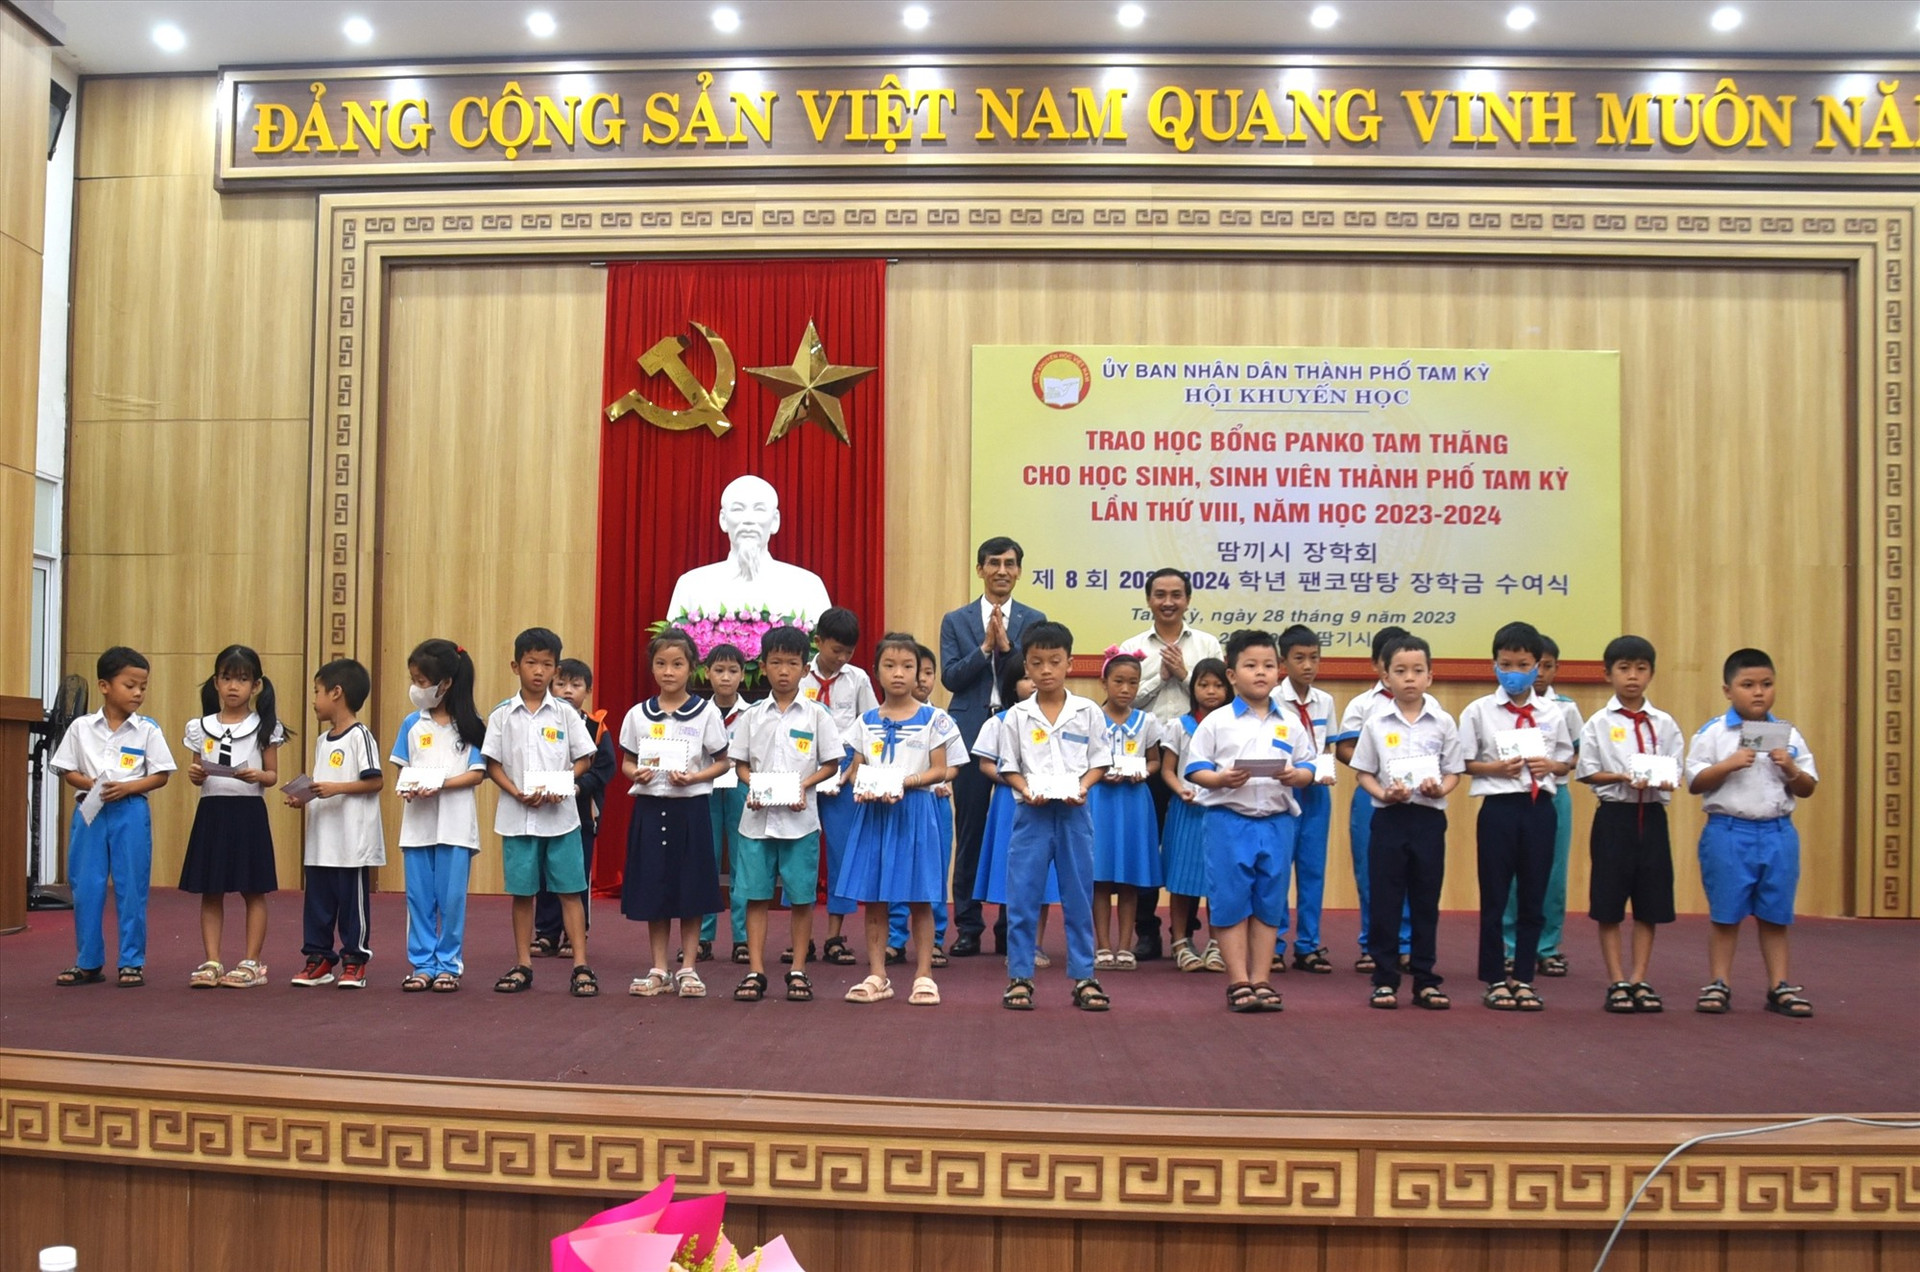 Năm nay có 256 học sinh, sinh viên Tam Kỳ nhận học bổng Panko Tam Thăng. Ảnh: X.P